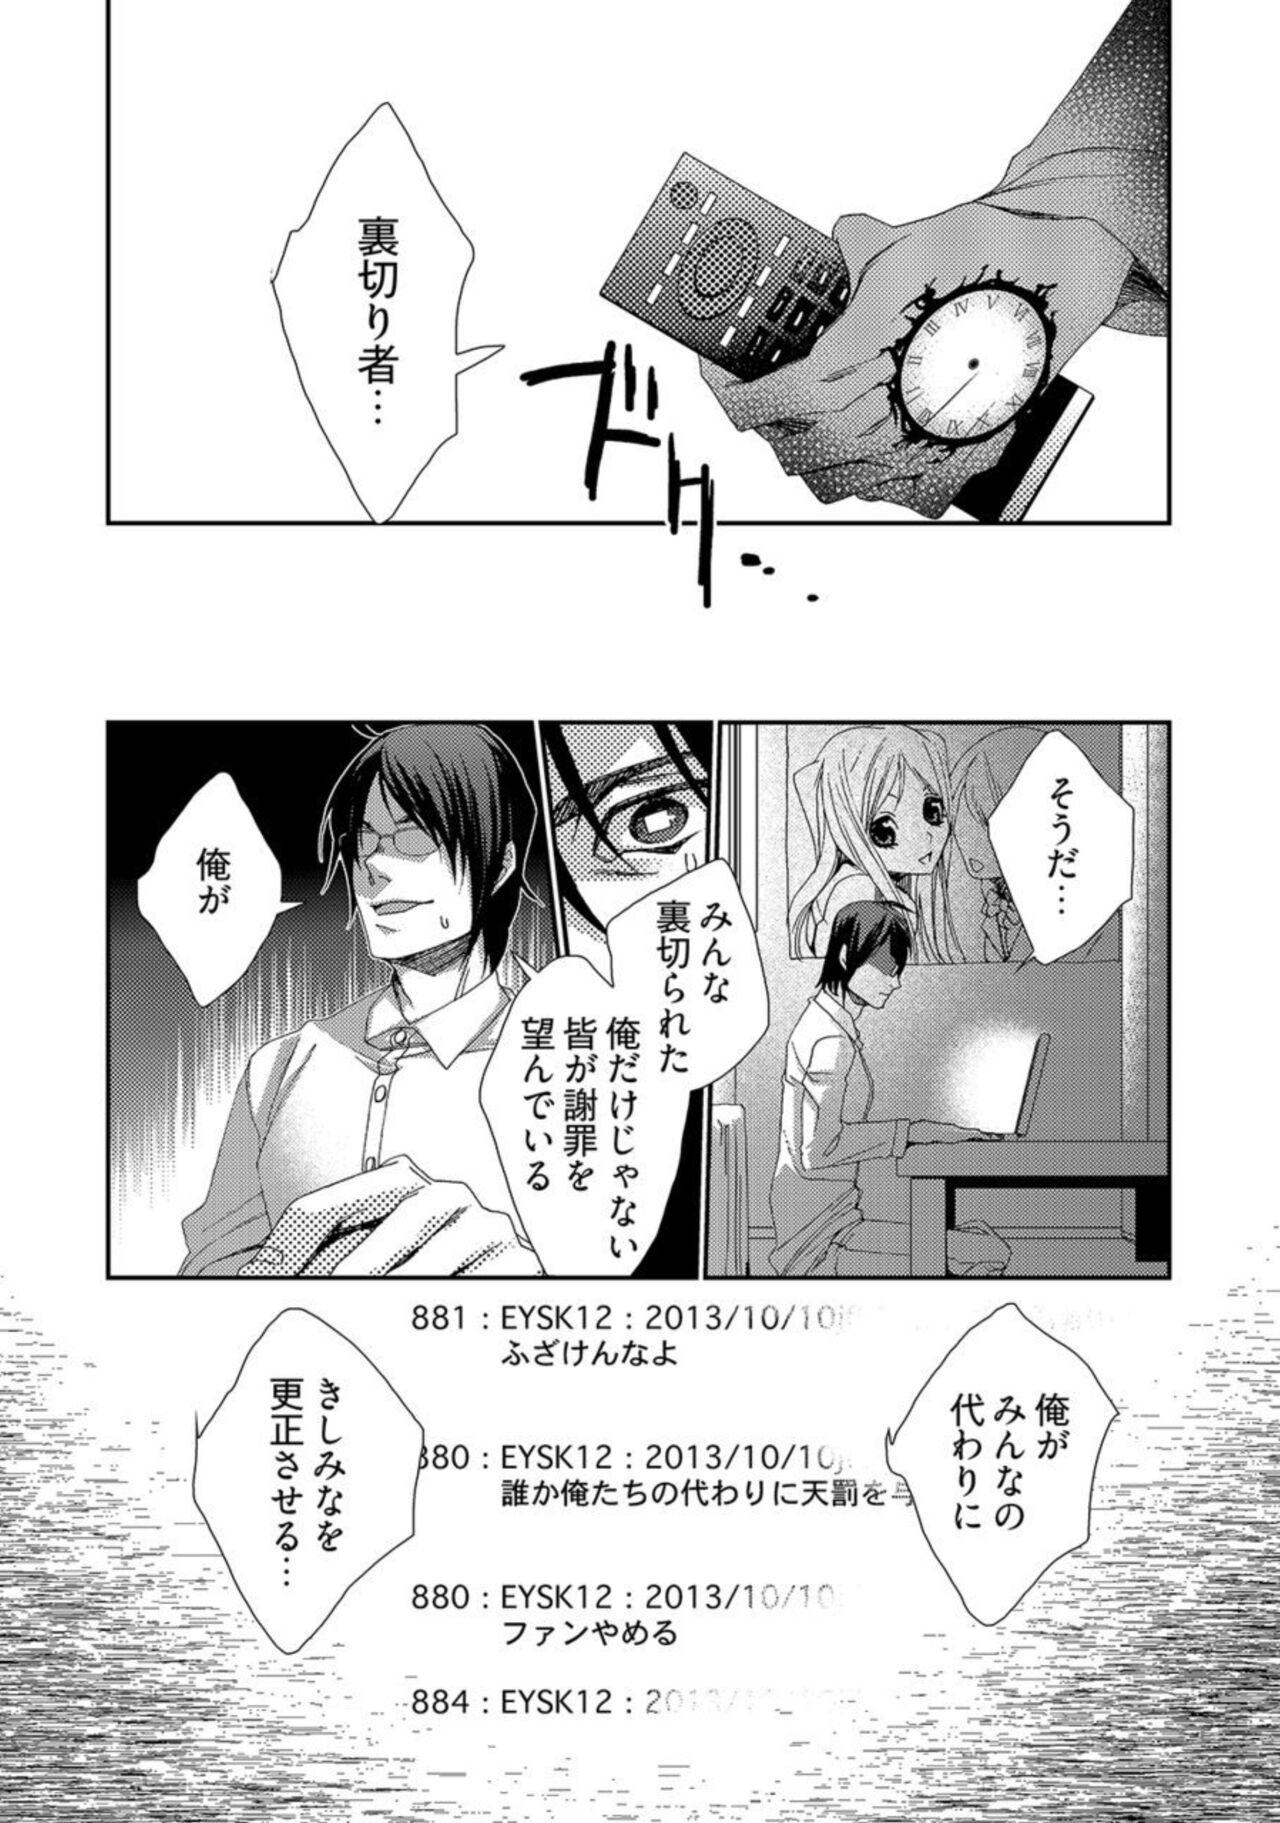 Gaybukkake Jikan o Ayatsuri Mukyoka Tanetsuke - Shojo kara Ninshin made Mugen Loop Vol. 2 Comedor - Page 4